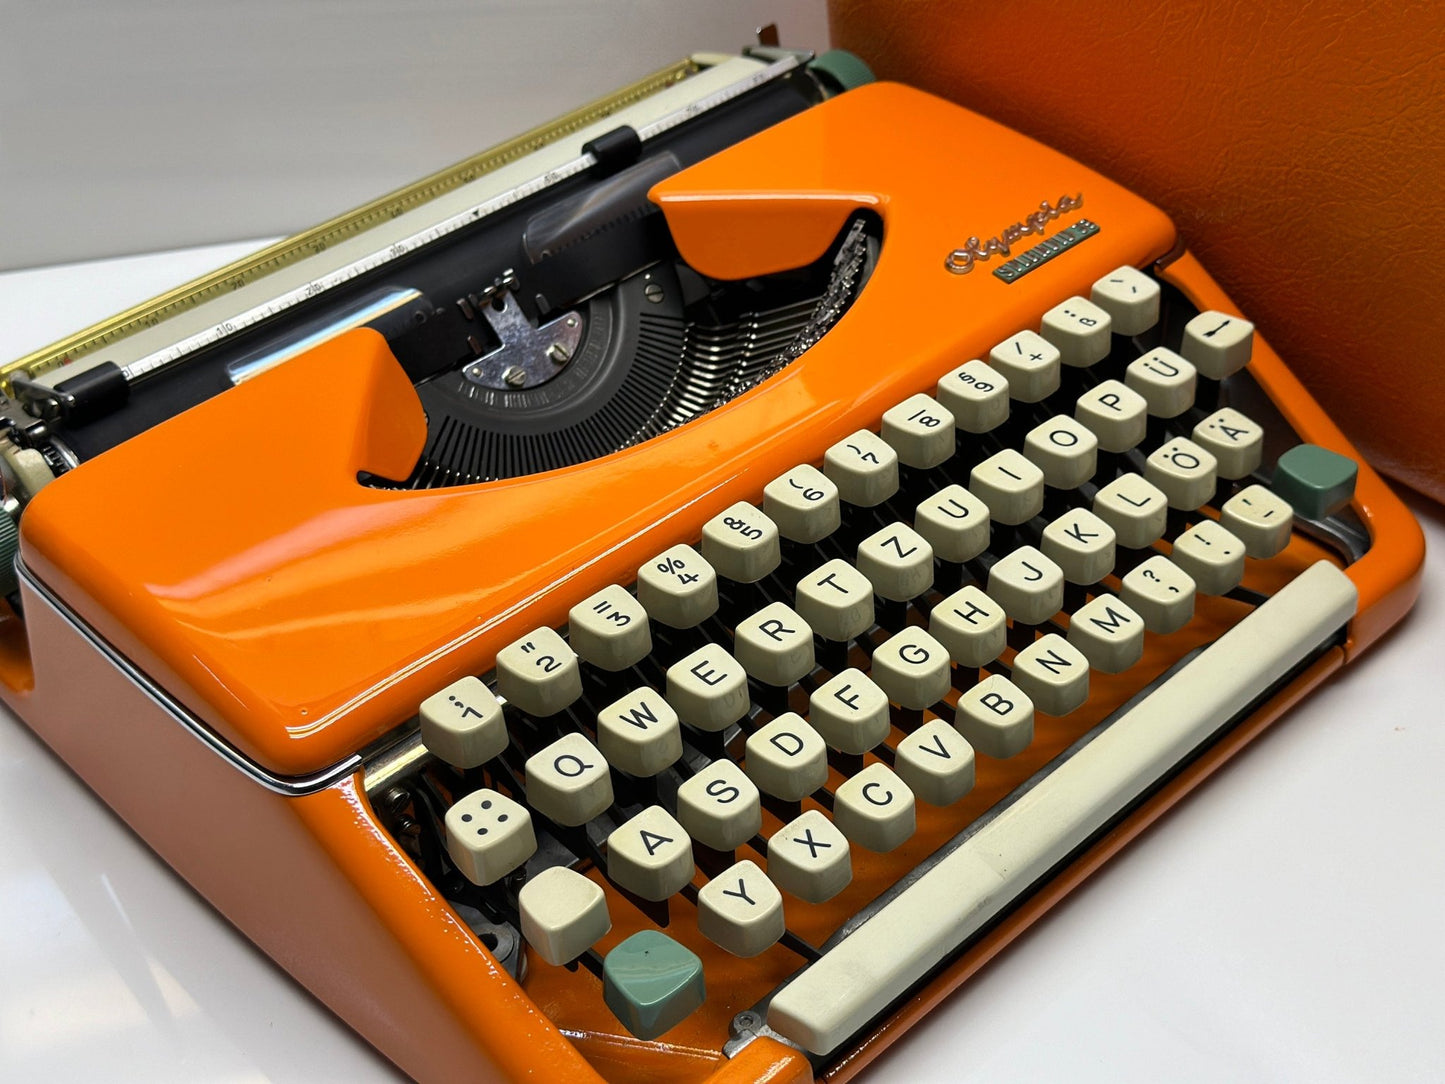 Olympia Splendid 33/66 Typewriter - QWERTZ Keyboard, White Keys, Orange Elegance, and Matching Bag - A Premium Gift for Writers and Typewrit